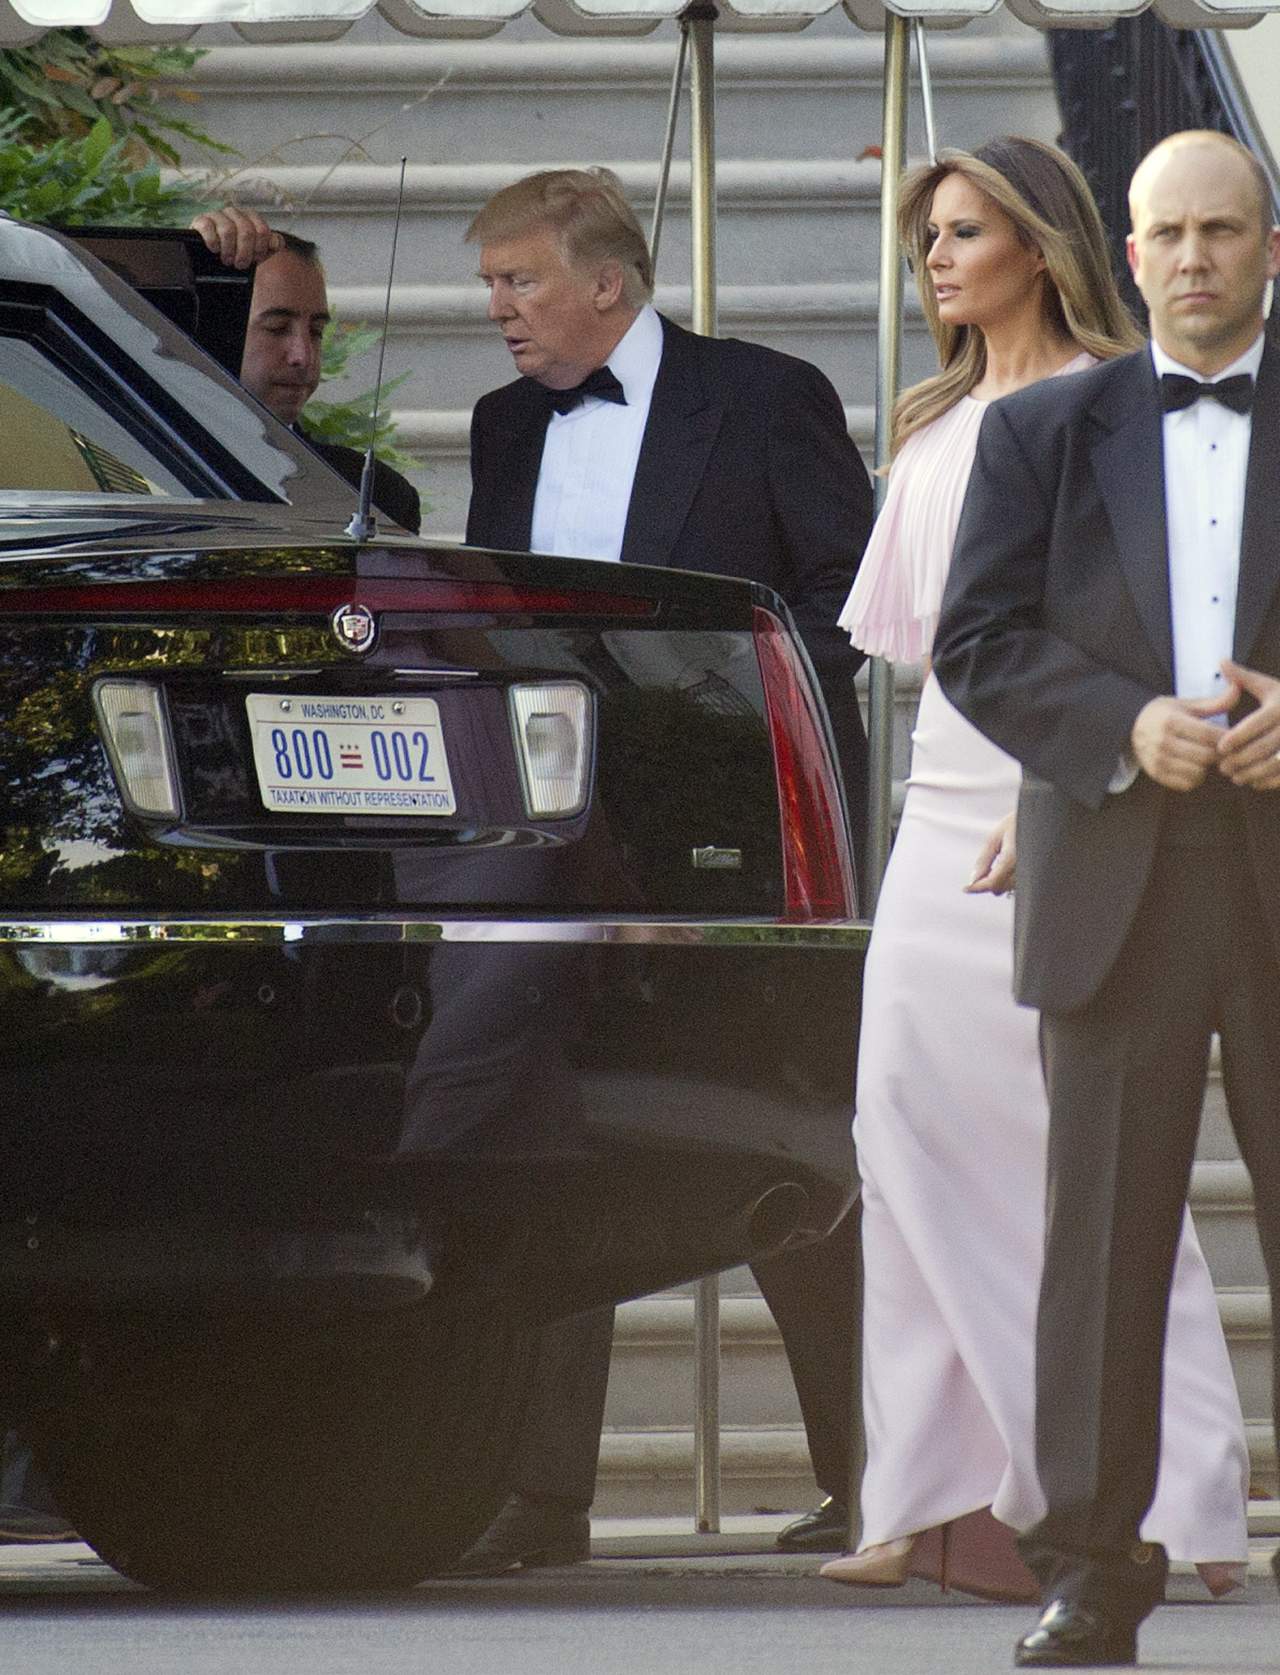 La Casa Blanca informó de la asistencia a la boda de la pareja presidencial, así como de la presencia del vicepresidente, Mike Pence, y su esposa, Karen. (EFE)